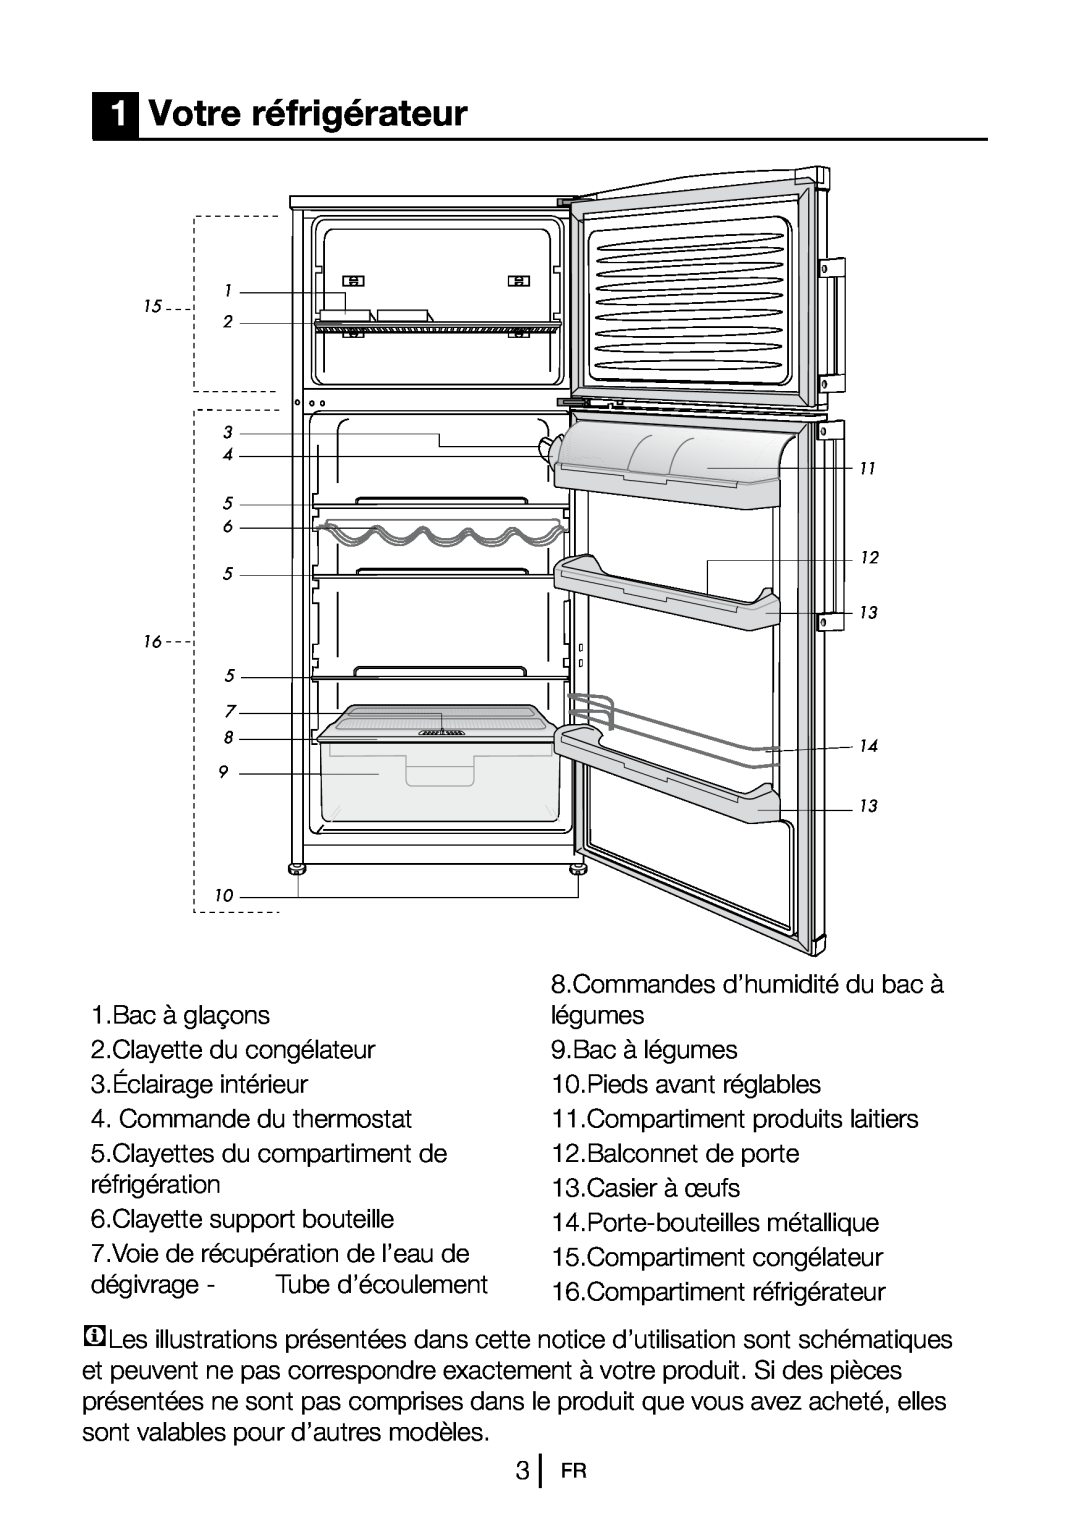 Blomberg DSM 9651 A+ manual 1Votre réfrigérateur 